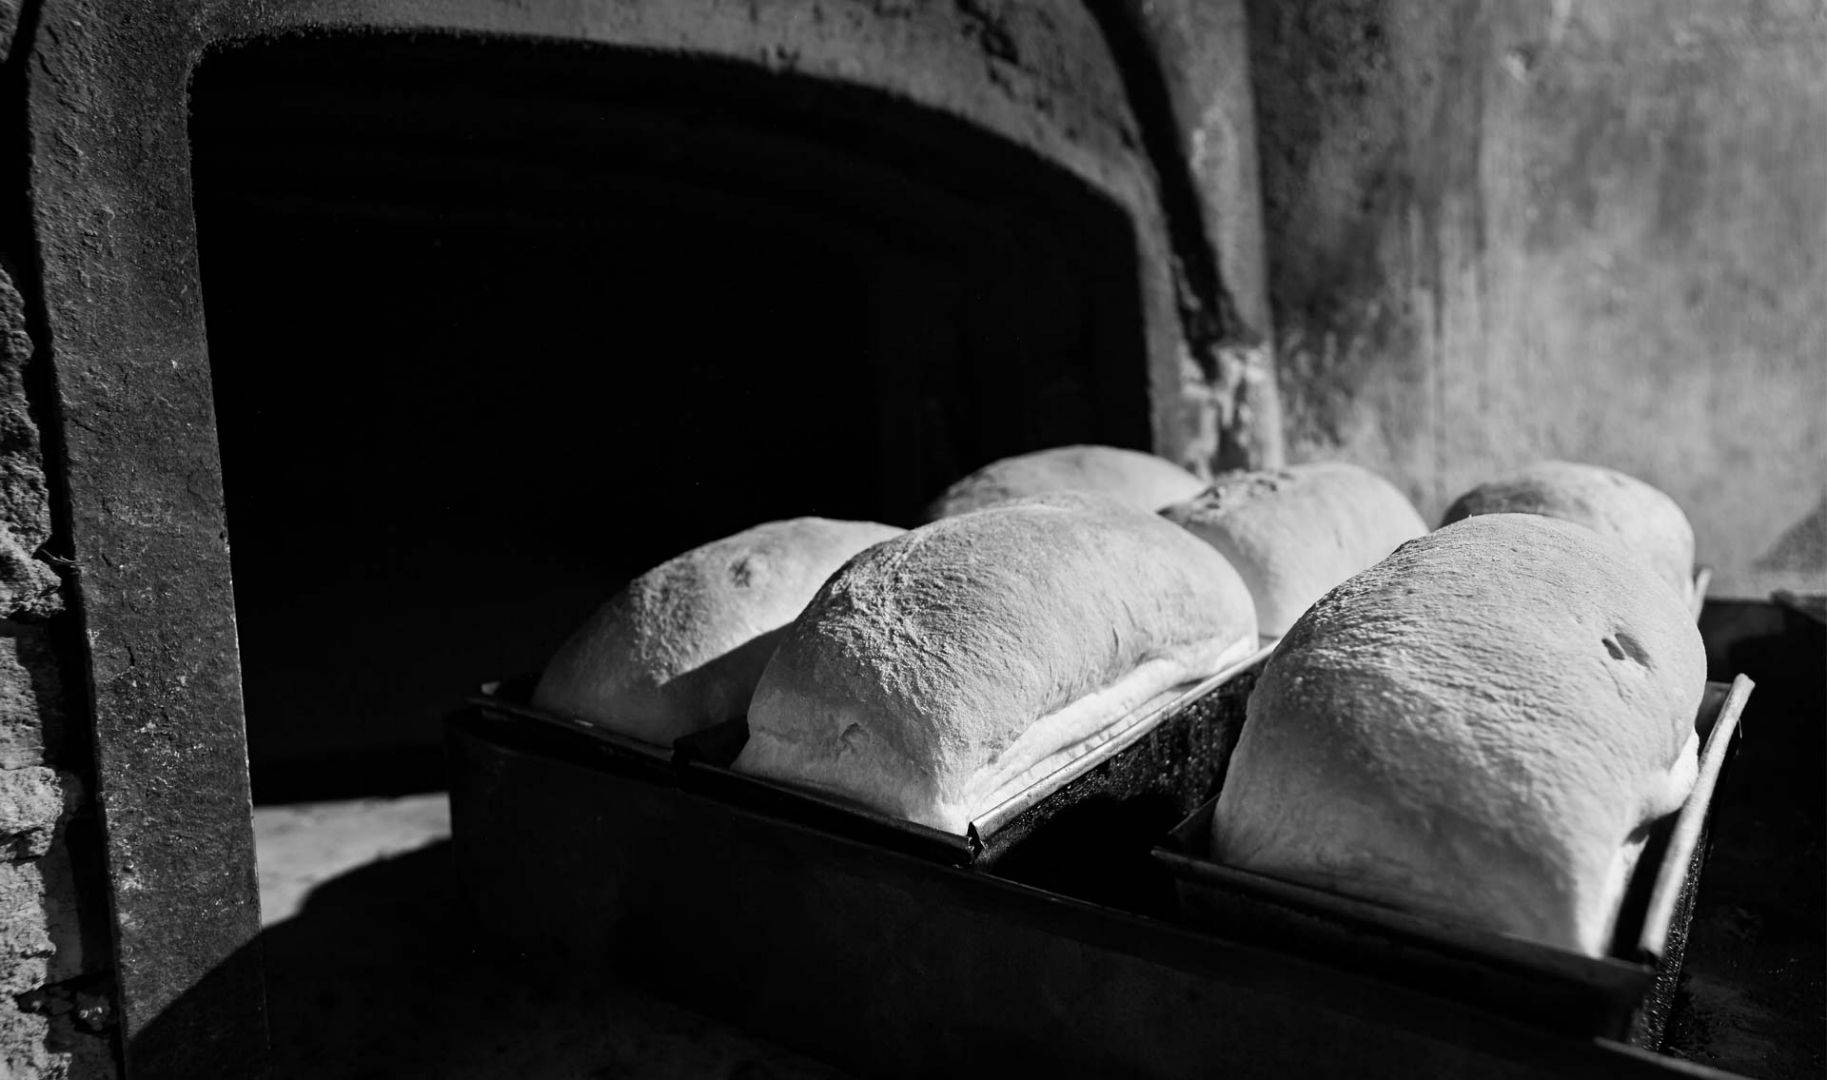 Il pane appena sfornato del panificio Viganò